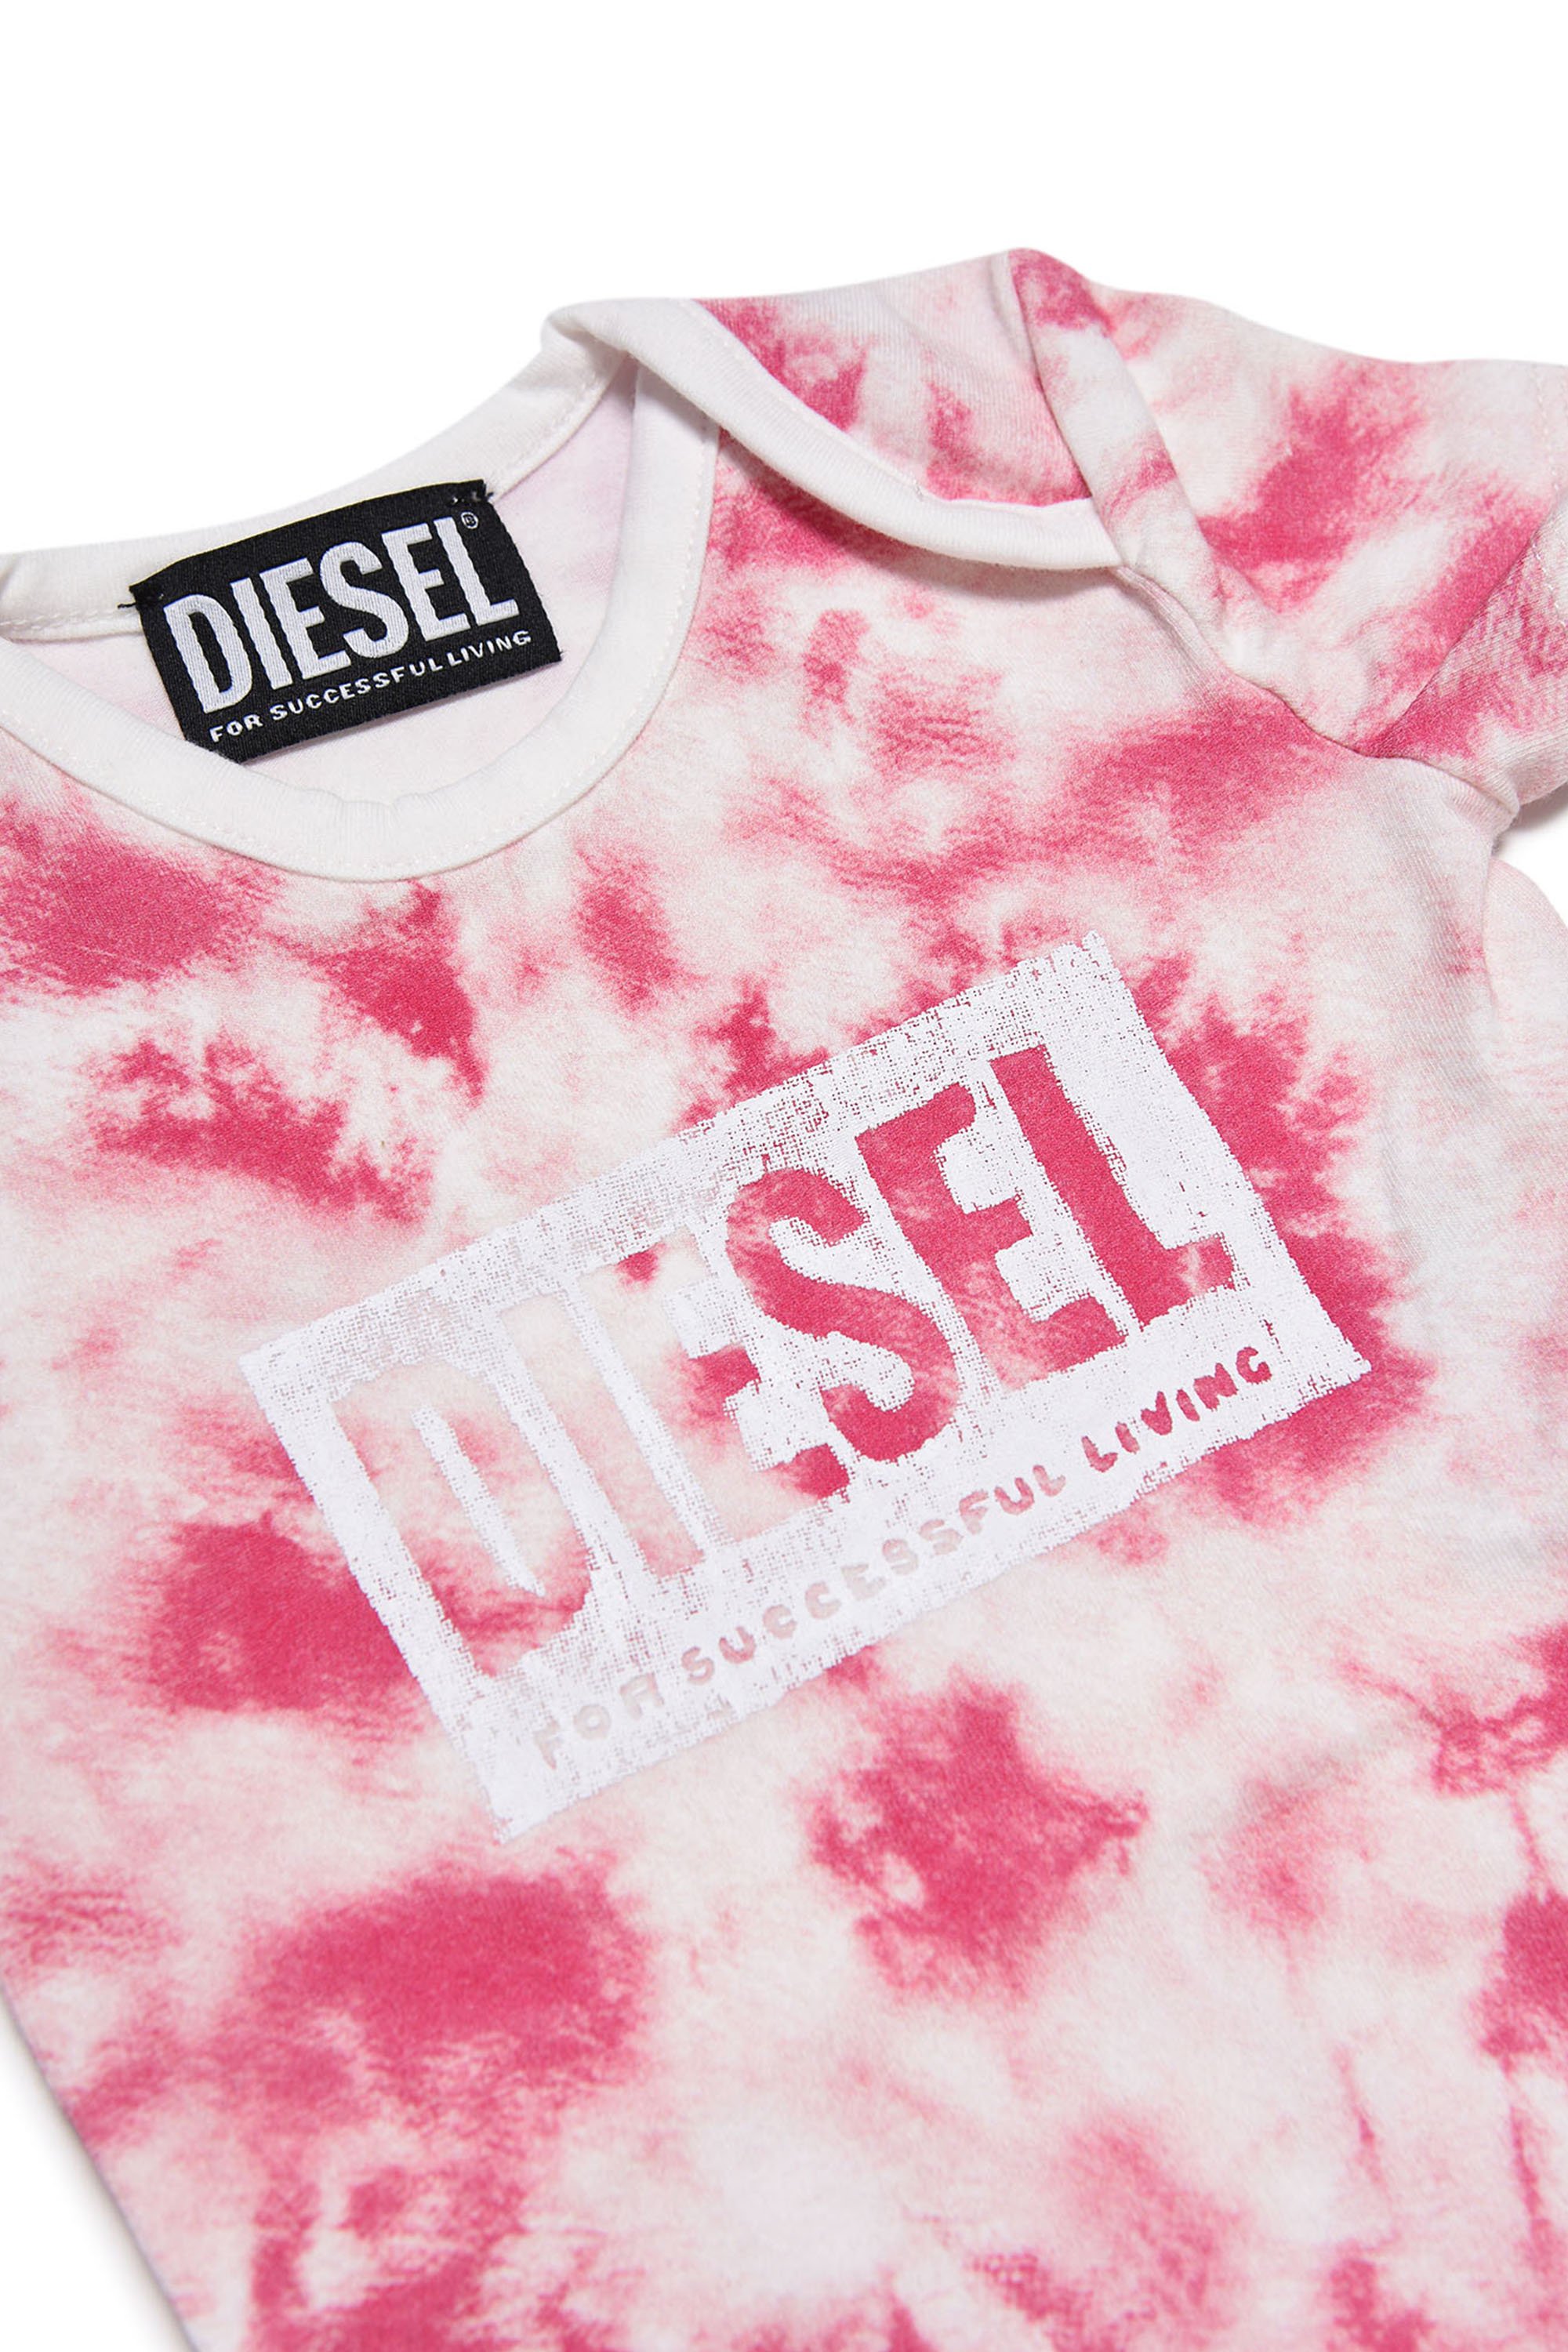 Diesel - UGY-NB, Blanc/Rose - Image 3